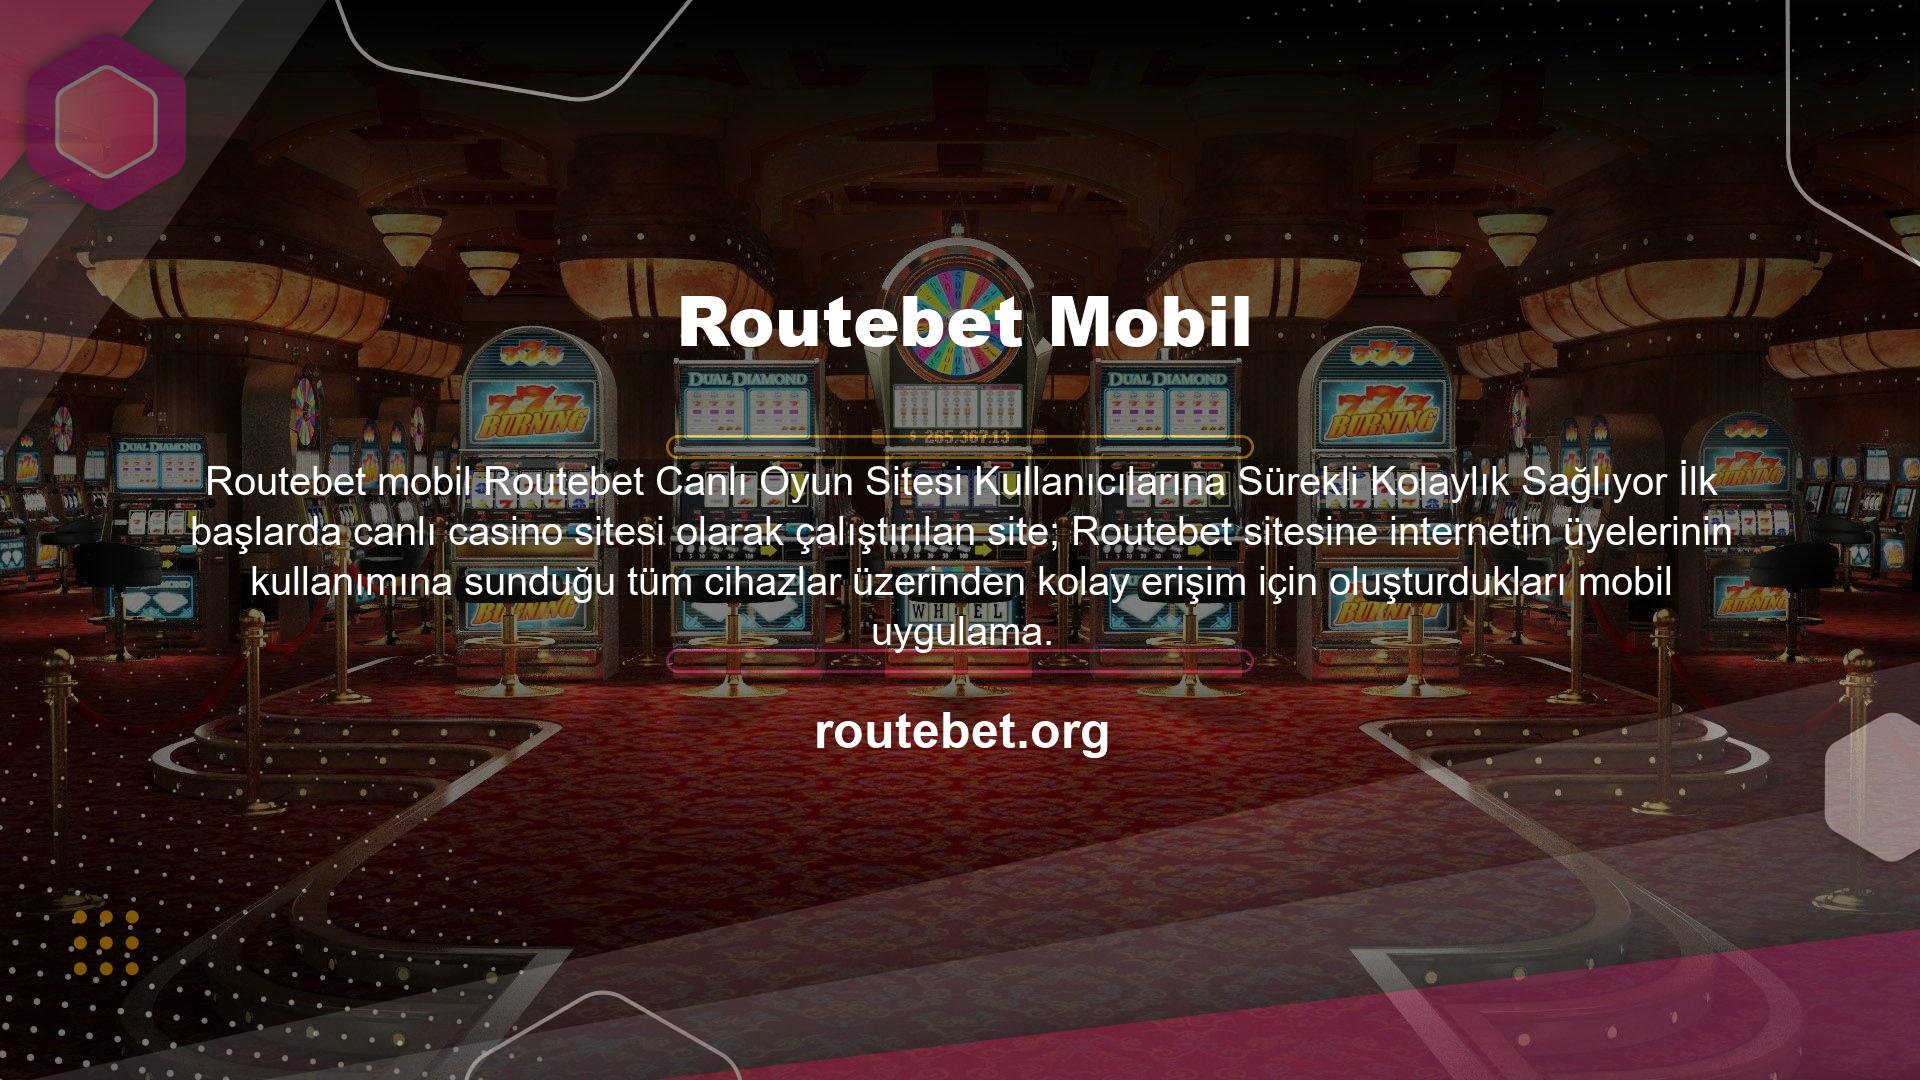 İnternete bağlı herhangi bir cihazdan siteye giriş yapabilir ve canlı casino oyunları oynayabilirsiniz